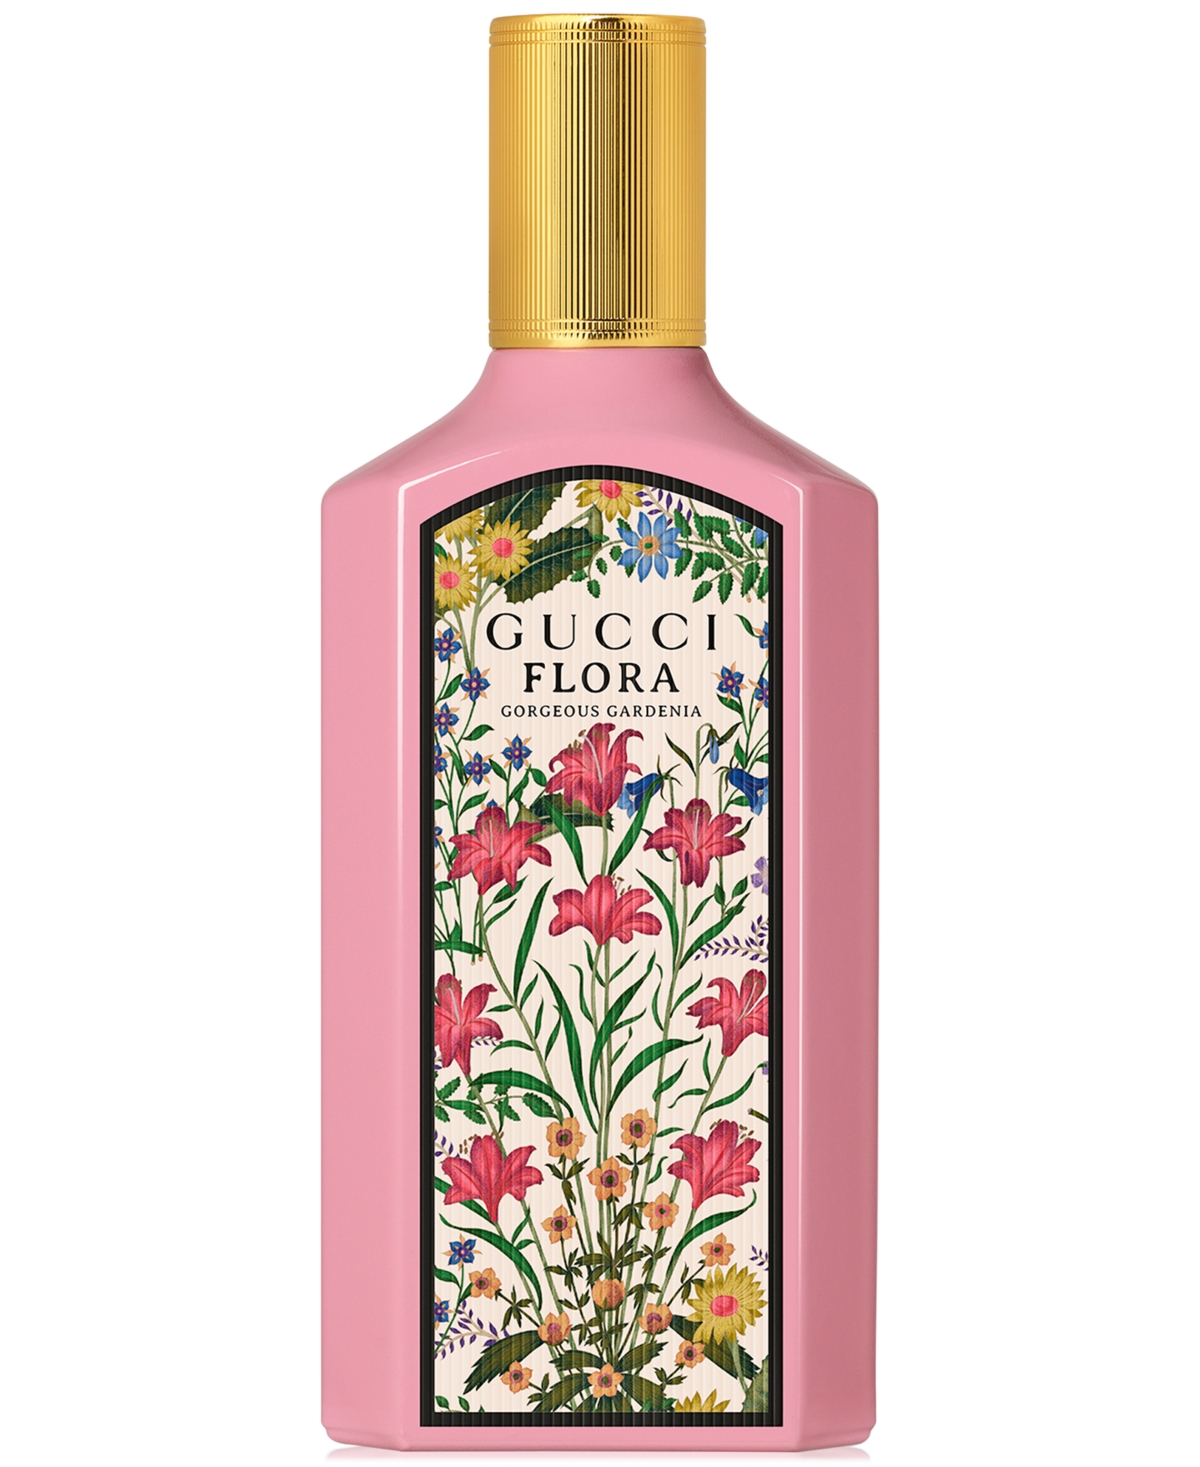 Gucci Flora Gorgeous Gardenia Eau De Parfum, 5 Oz.